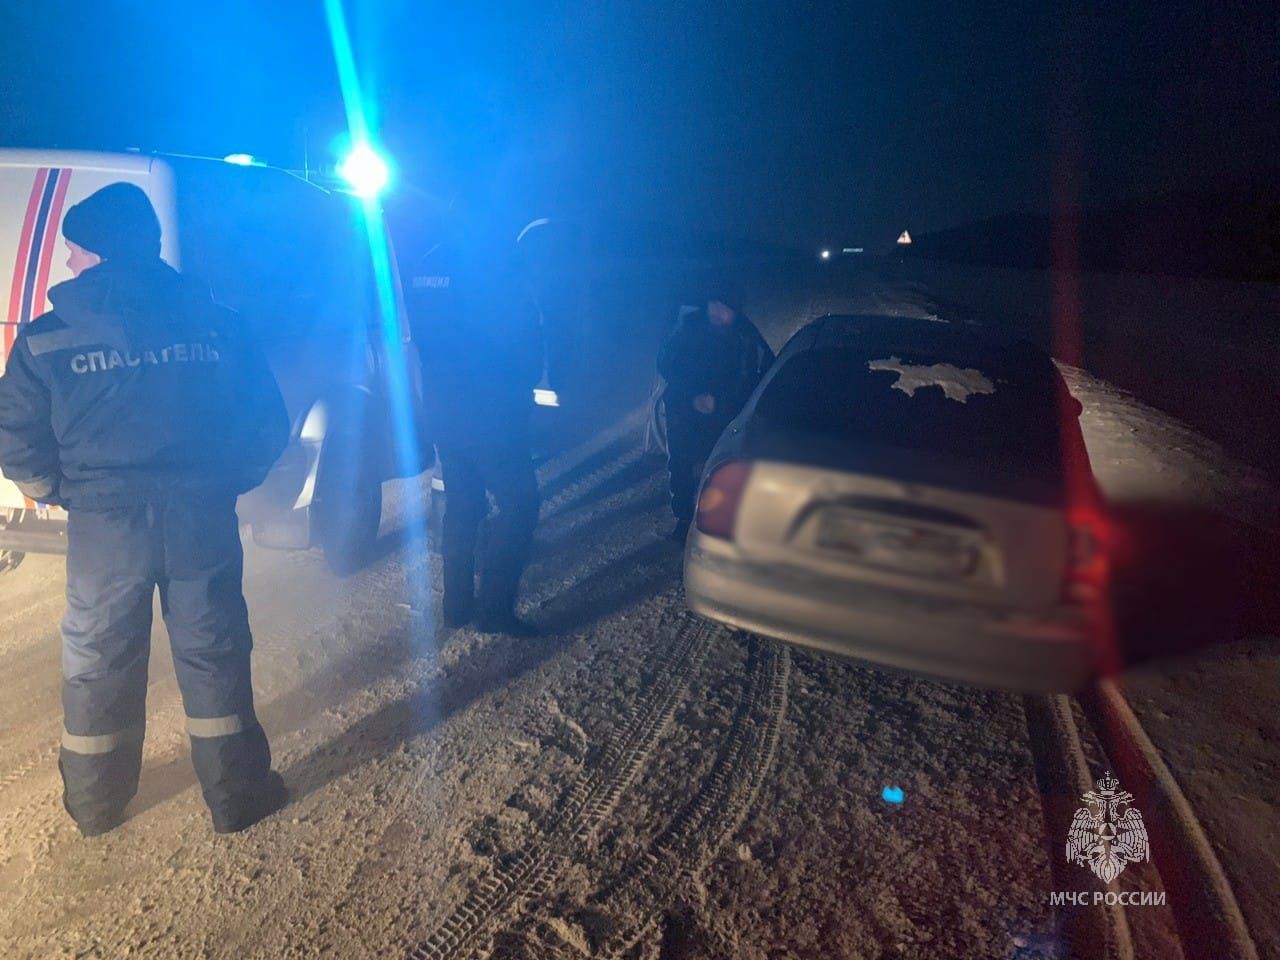 Сотрудники МЧС спасли замерзающих водителя и пассажира на трассе в Татарстане